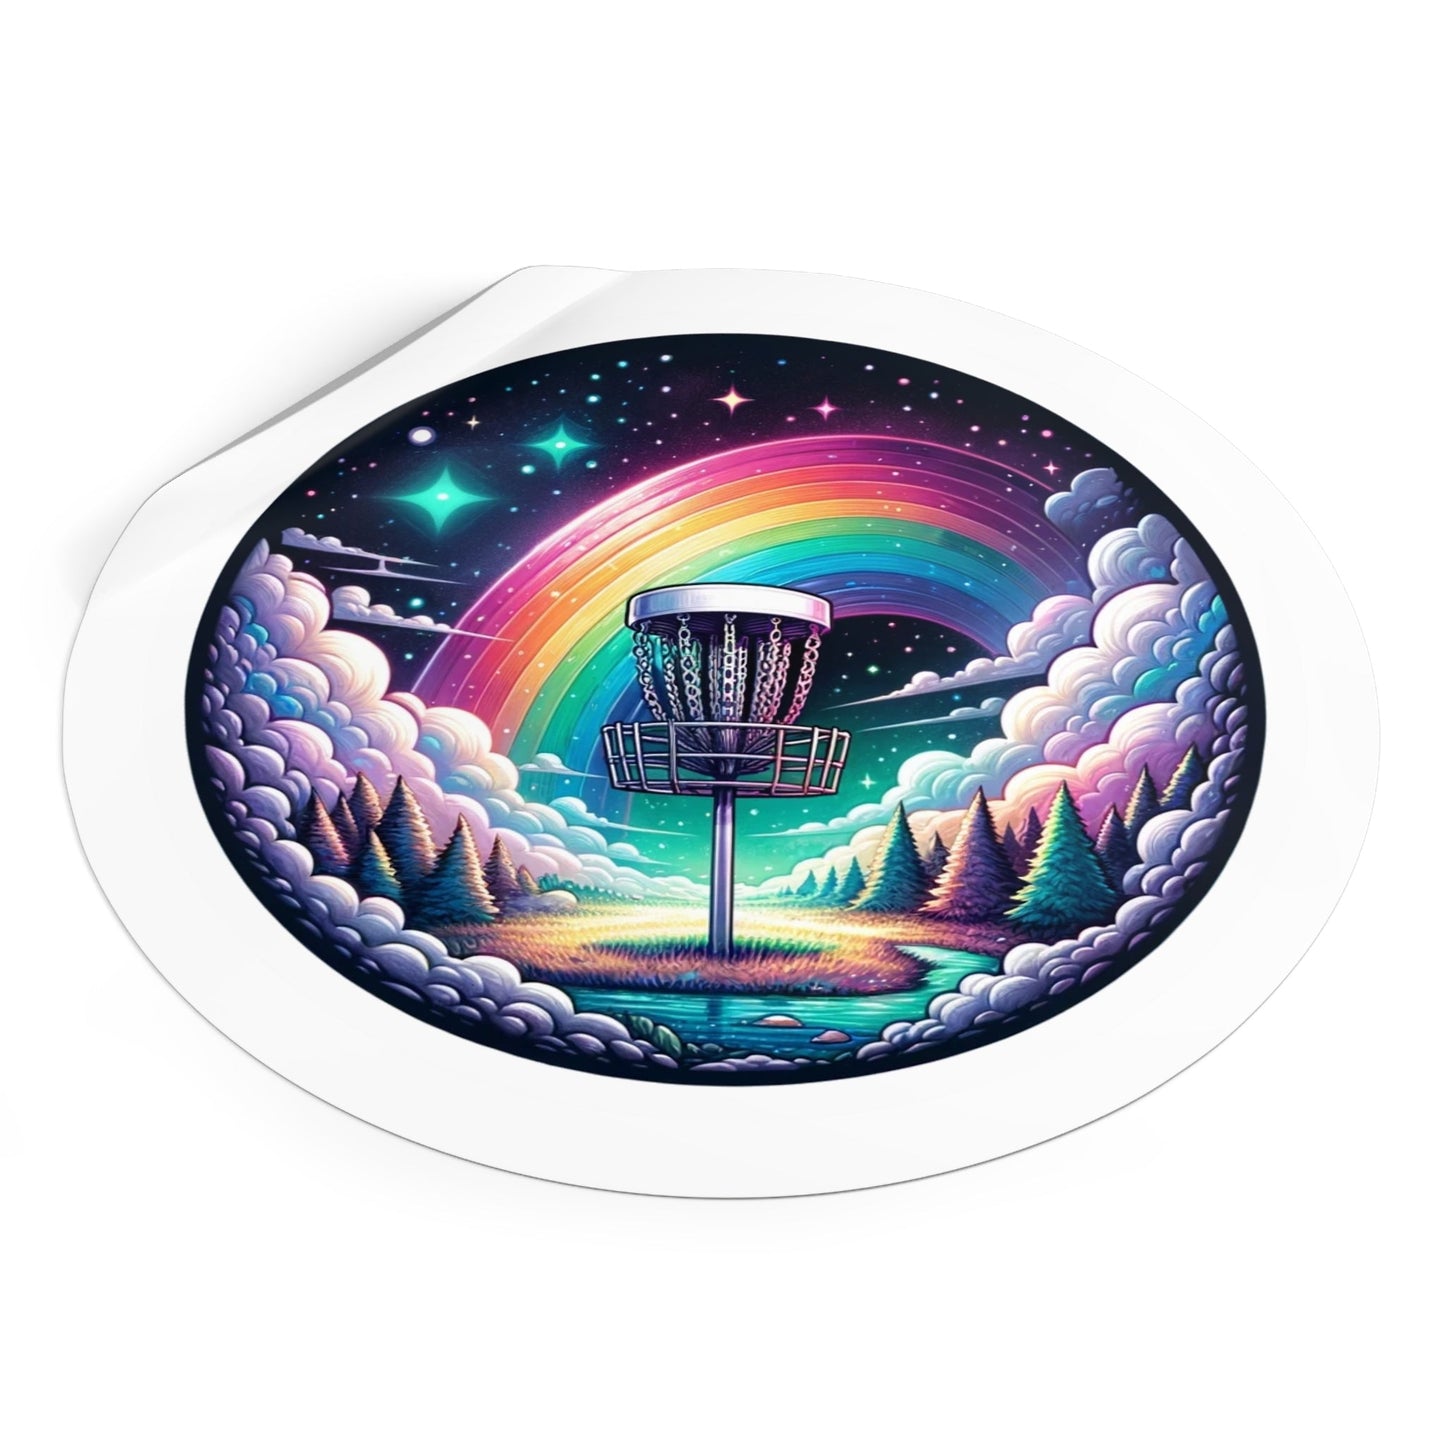 Disc Golf Basket Galaxy Rainbow - Round Vinyl Stickers - Quirky Goodies